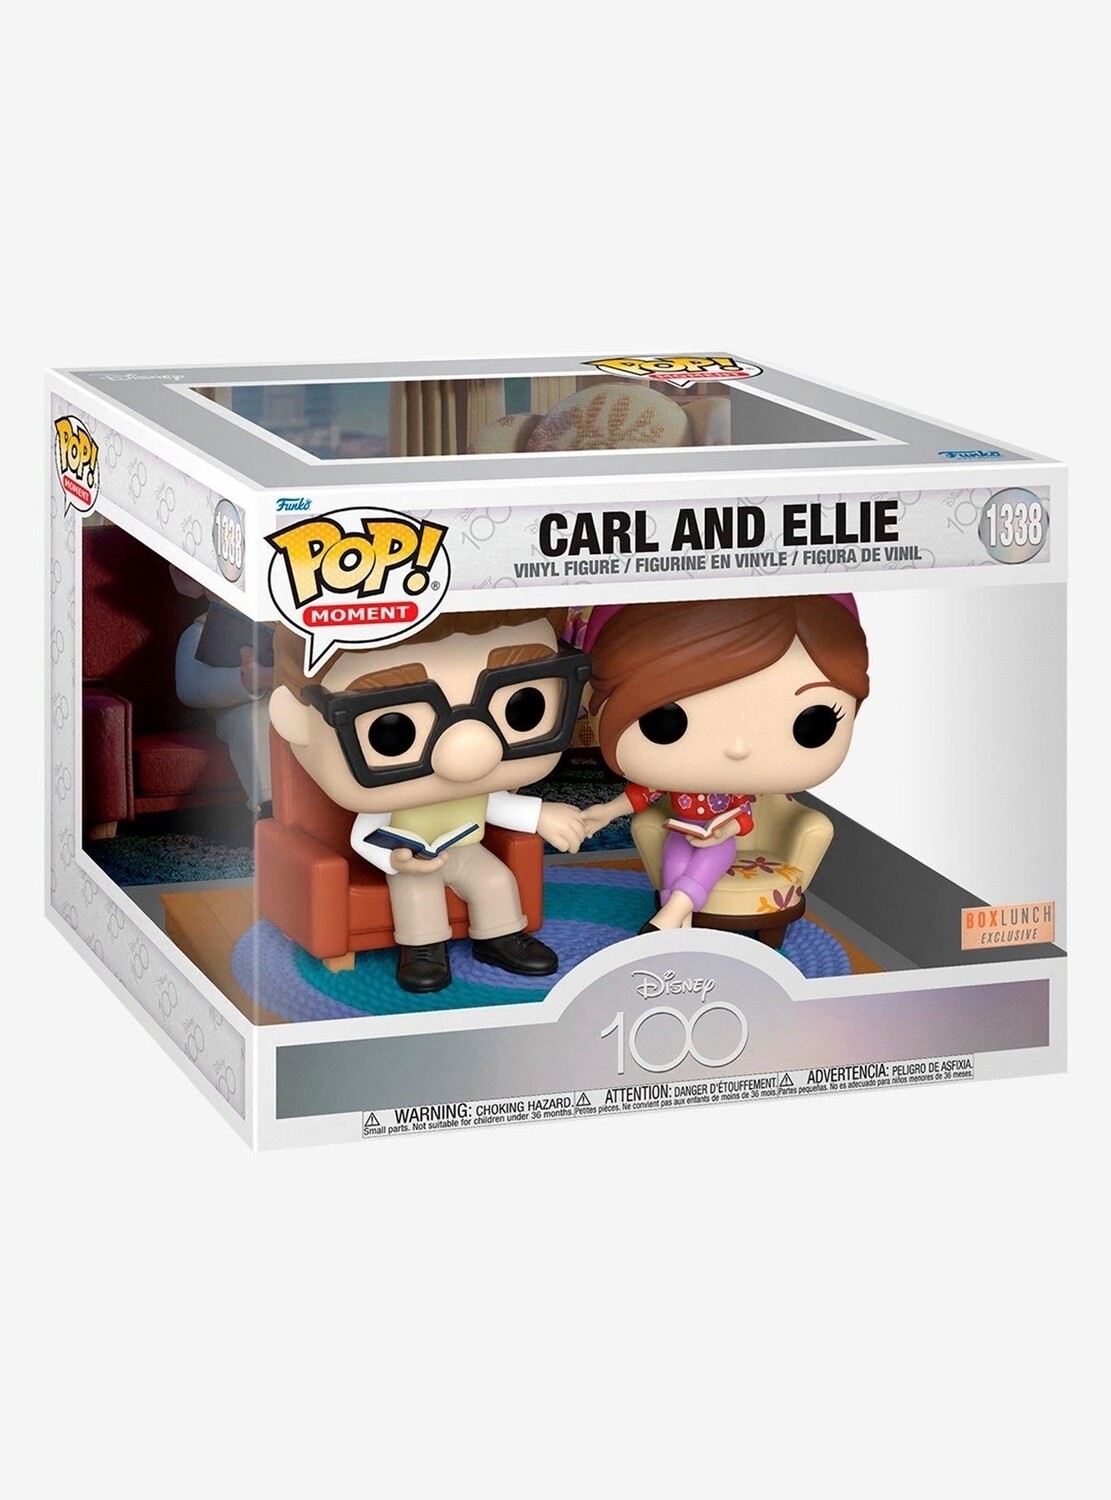 Pre-orden Funko Pop Carl & Ellie Exclusivo de Boxlunch